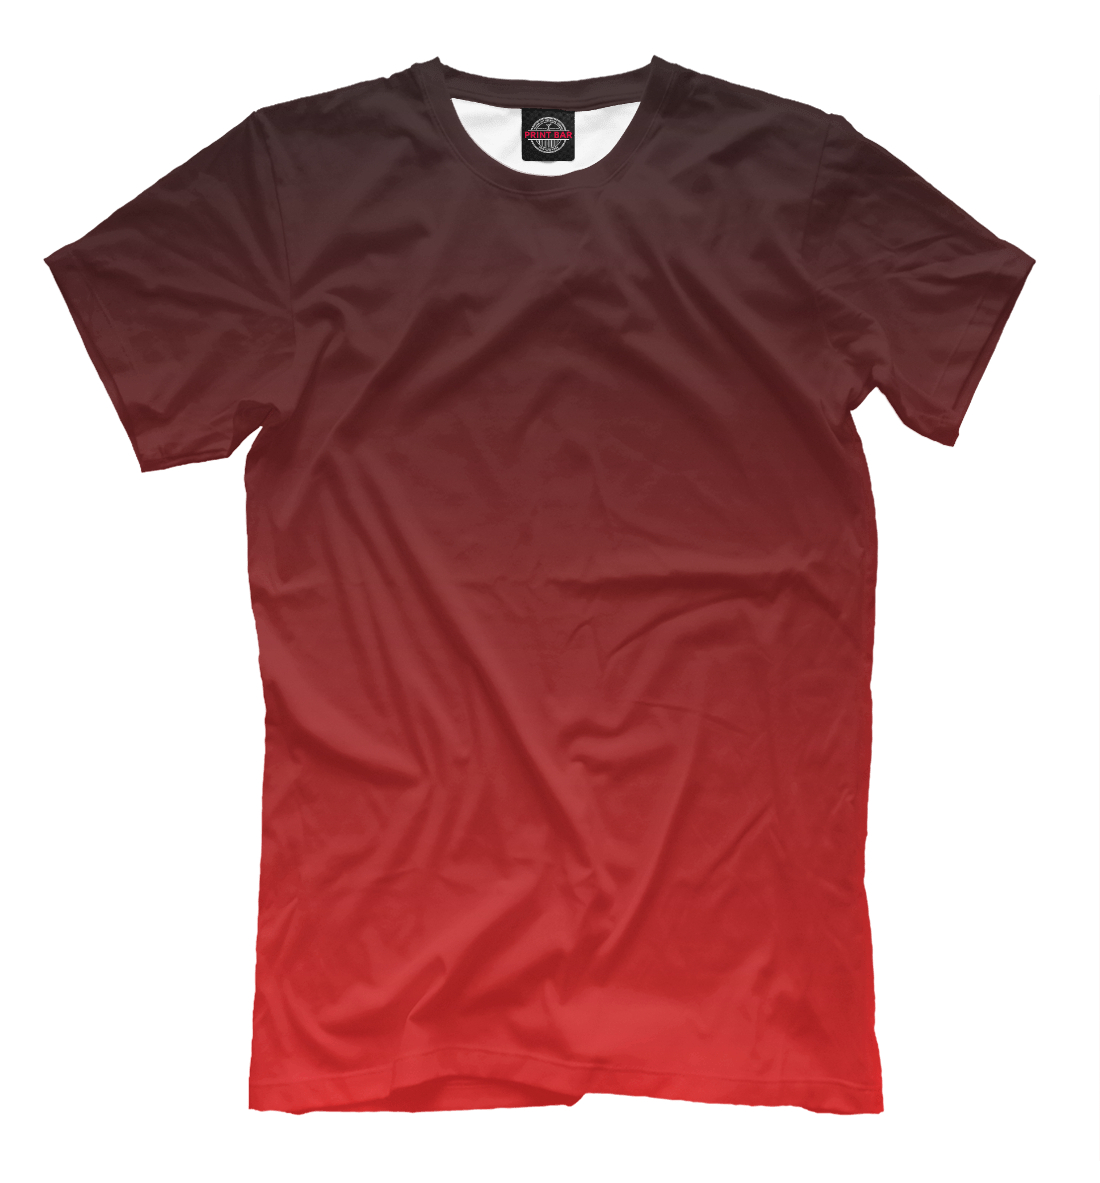 Футболка Градиент Красный в Черный для мужчин, артикул: CLR-933713-fut-2mp